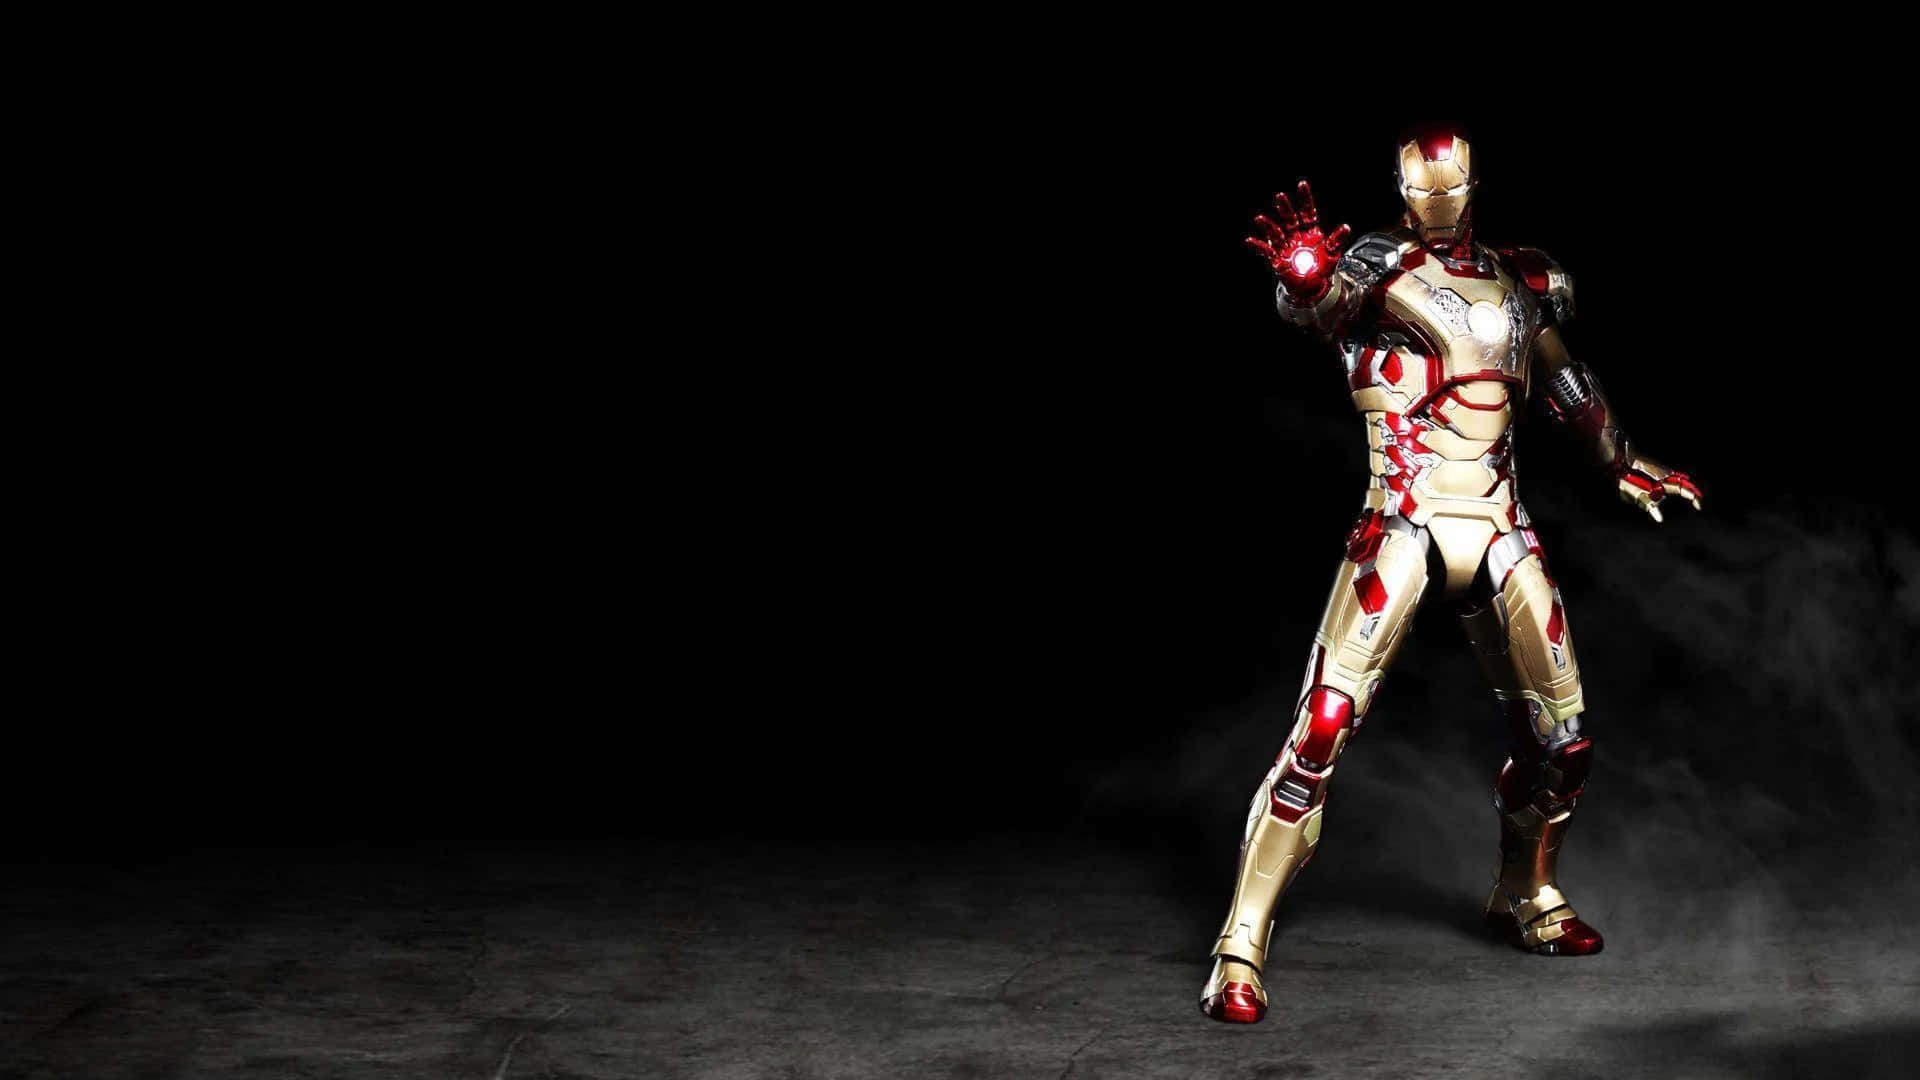 Image Iron Man 3 Background